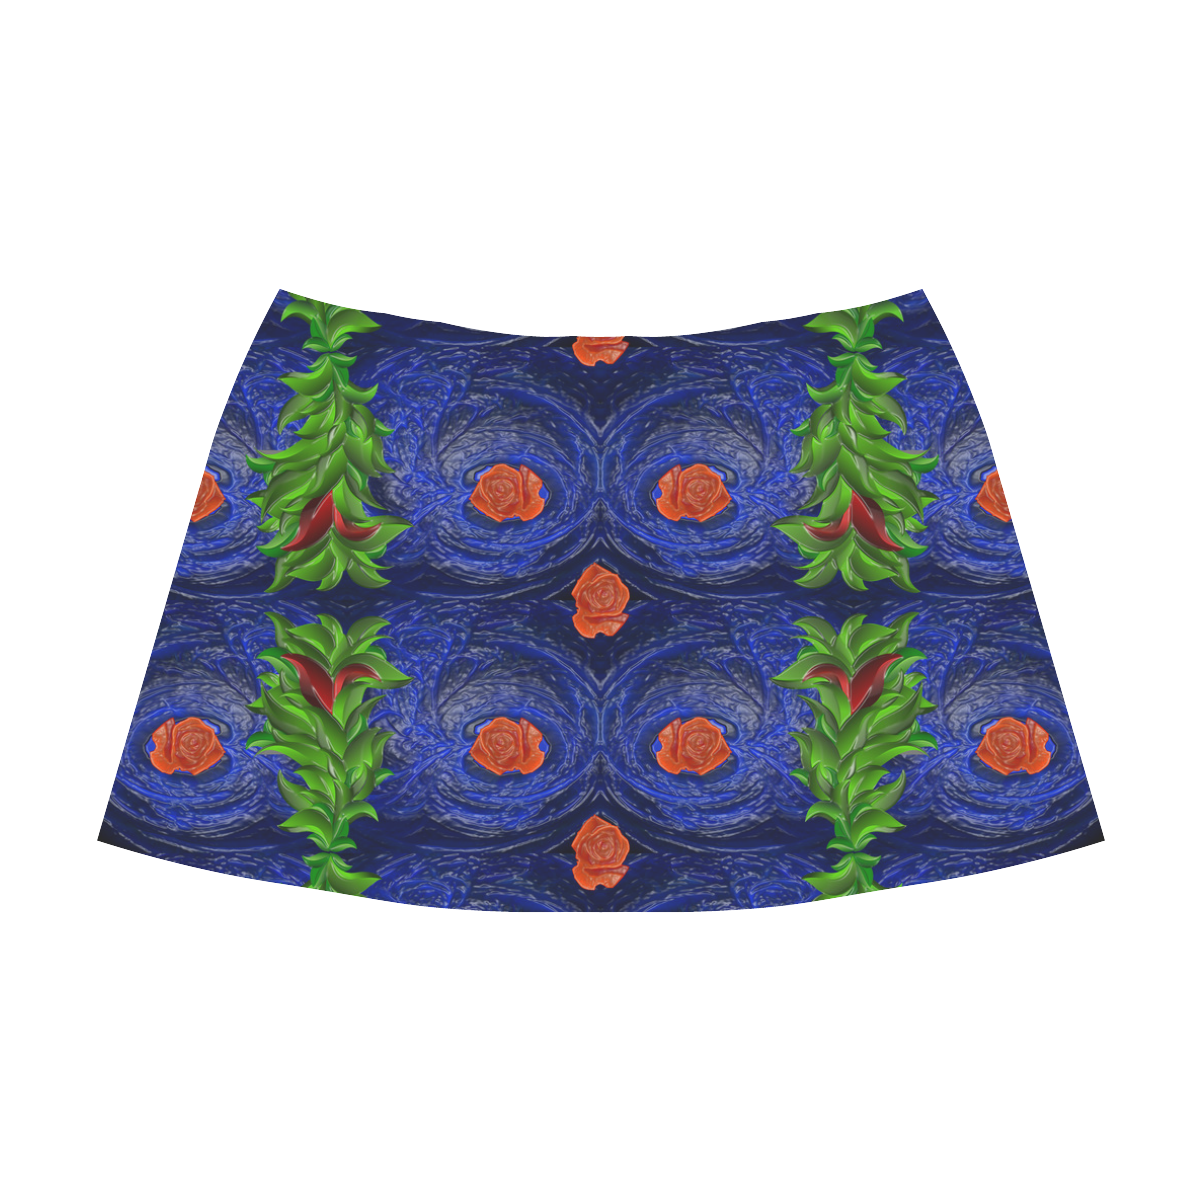 Roses on blue fractal with green leaves Mnemosyne Women's Crepe Skirt (Model D16)